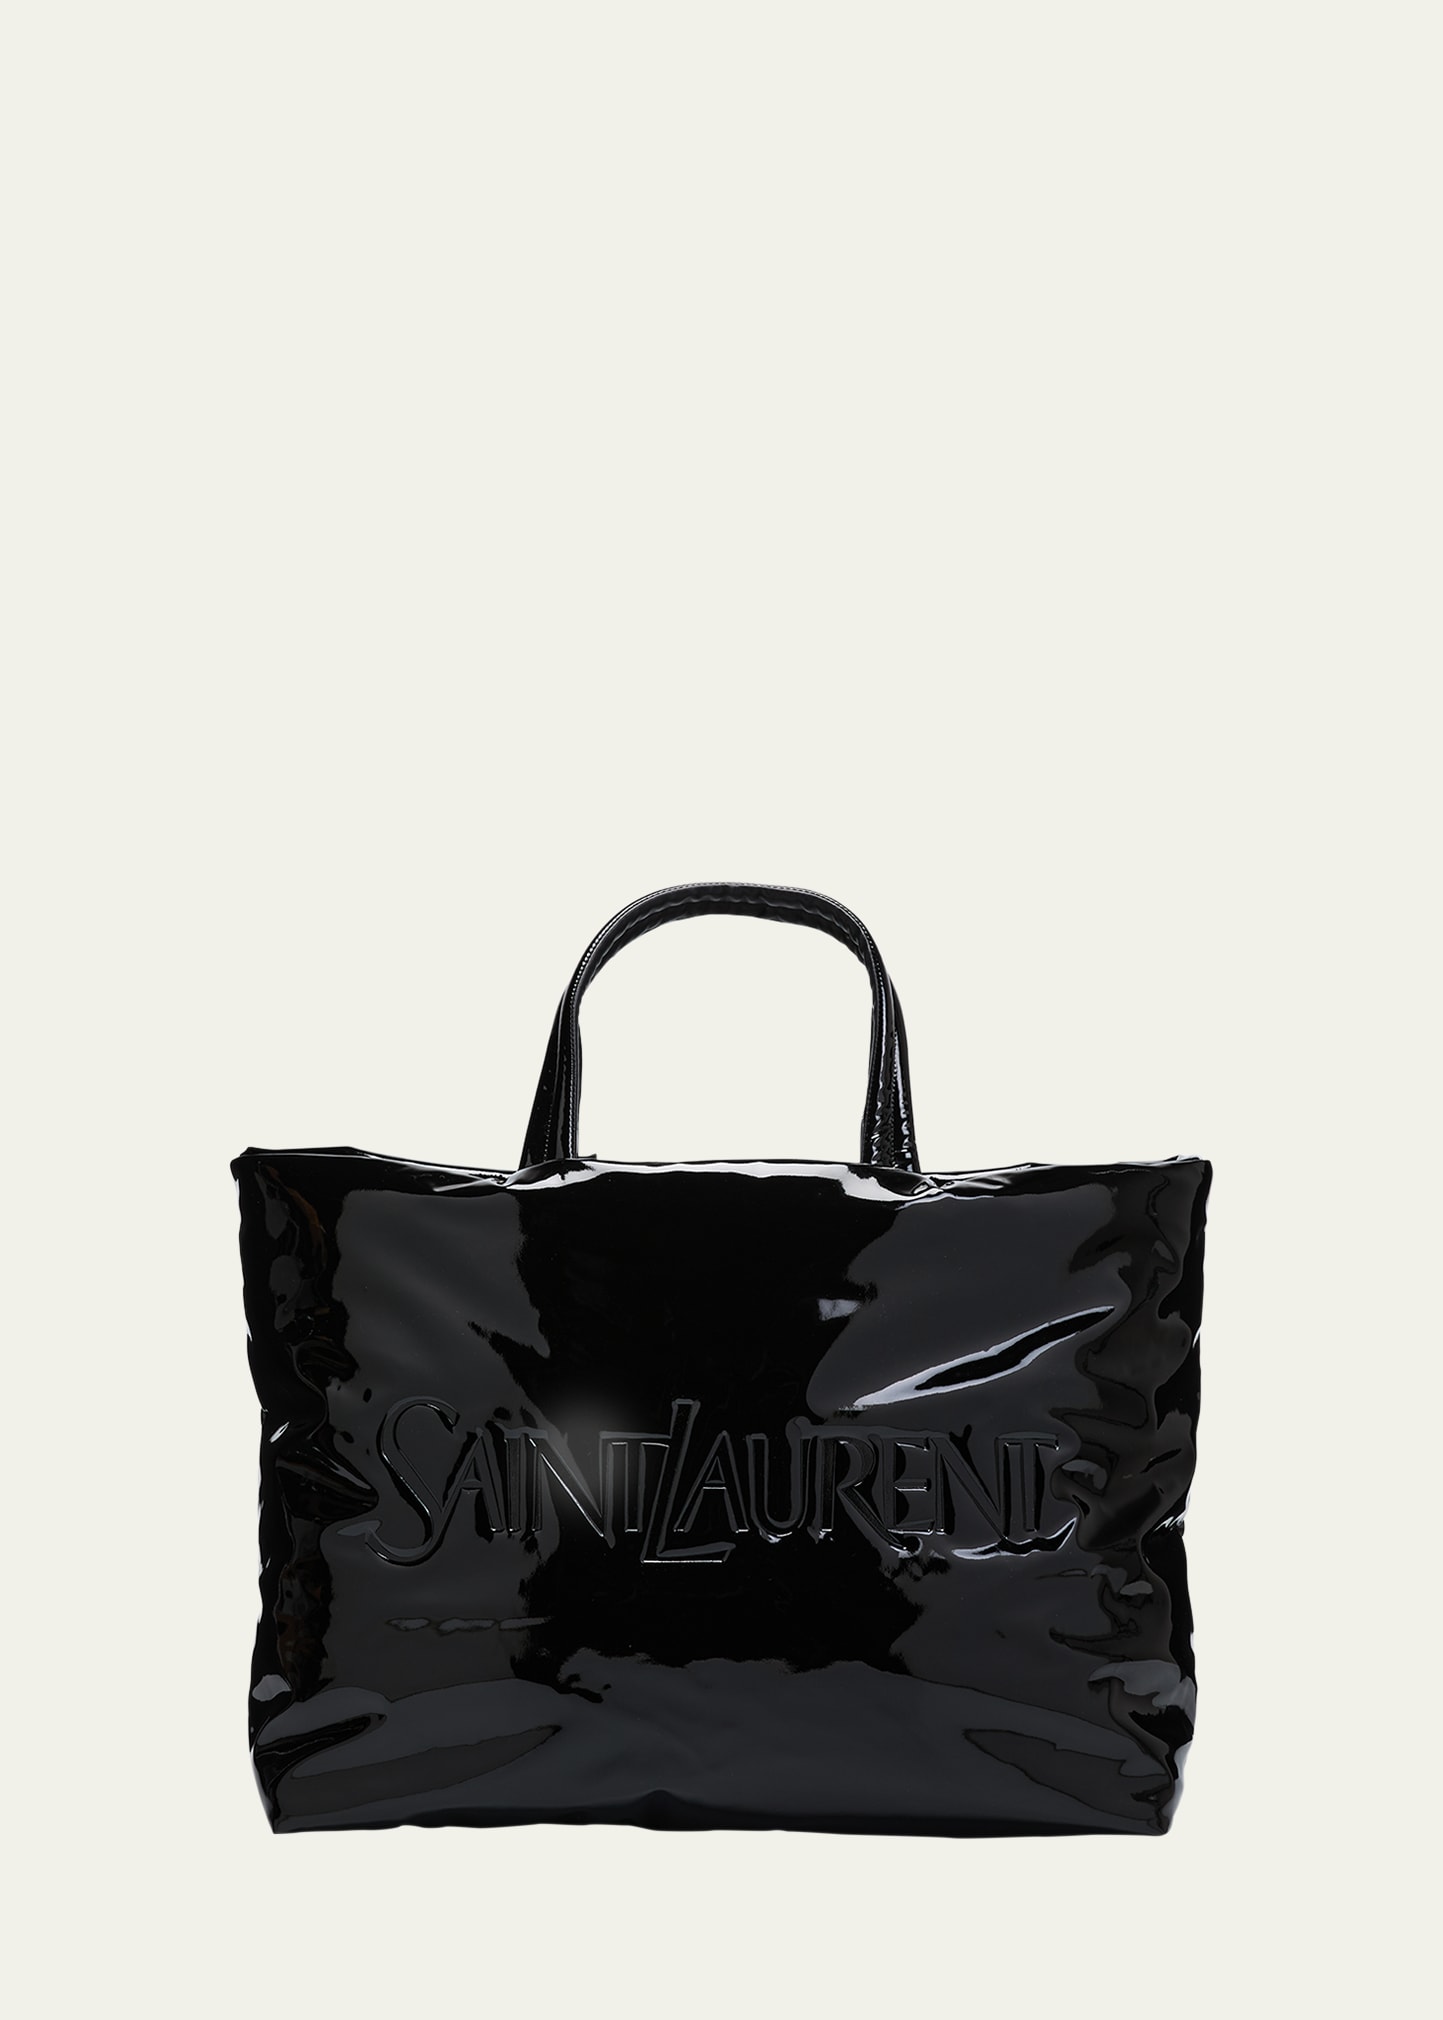 Saint Laurent Men's Patent Leather Maxi Tote Bag In Nero